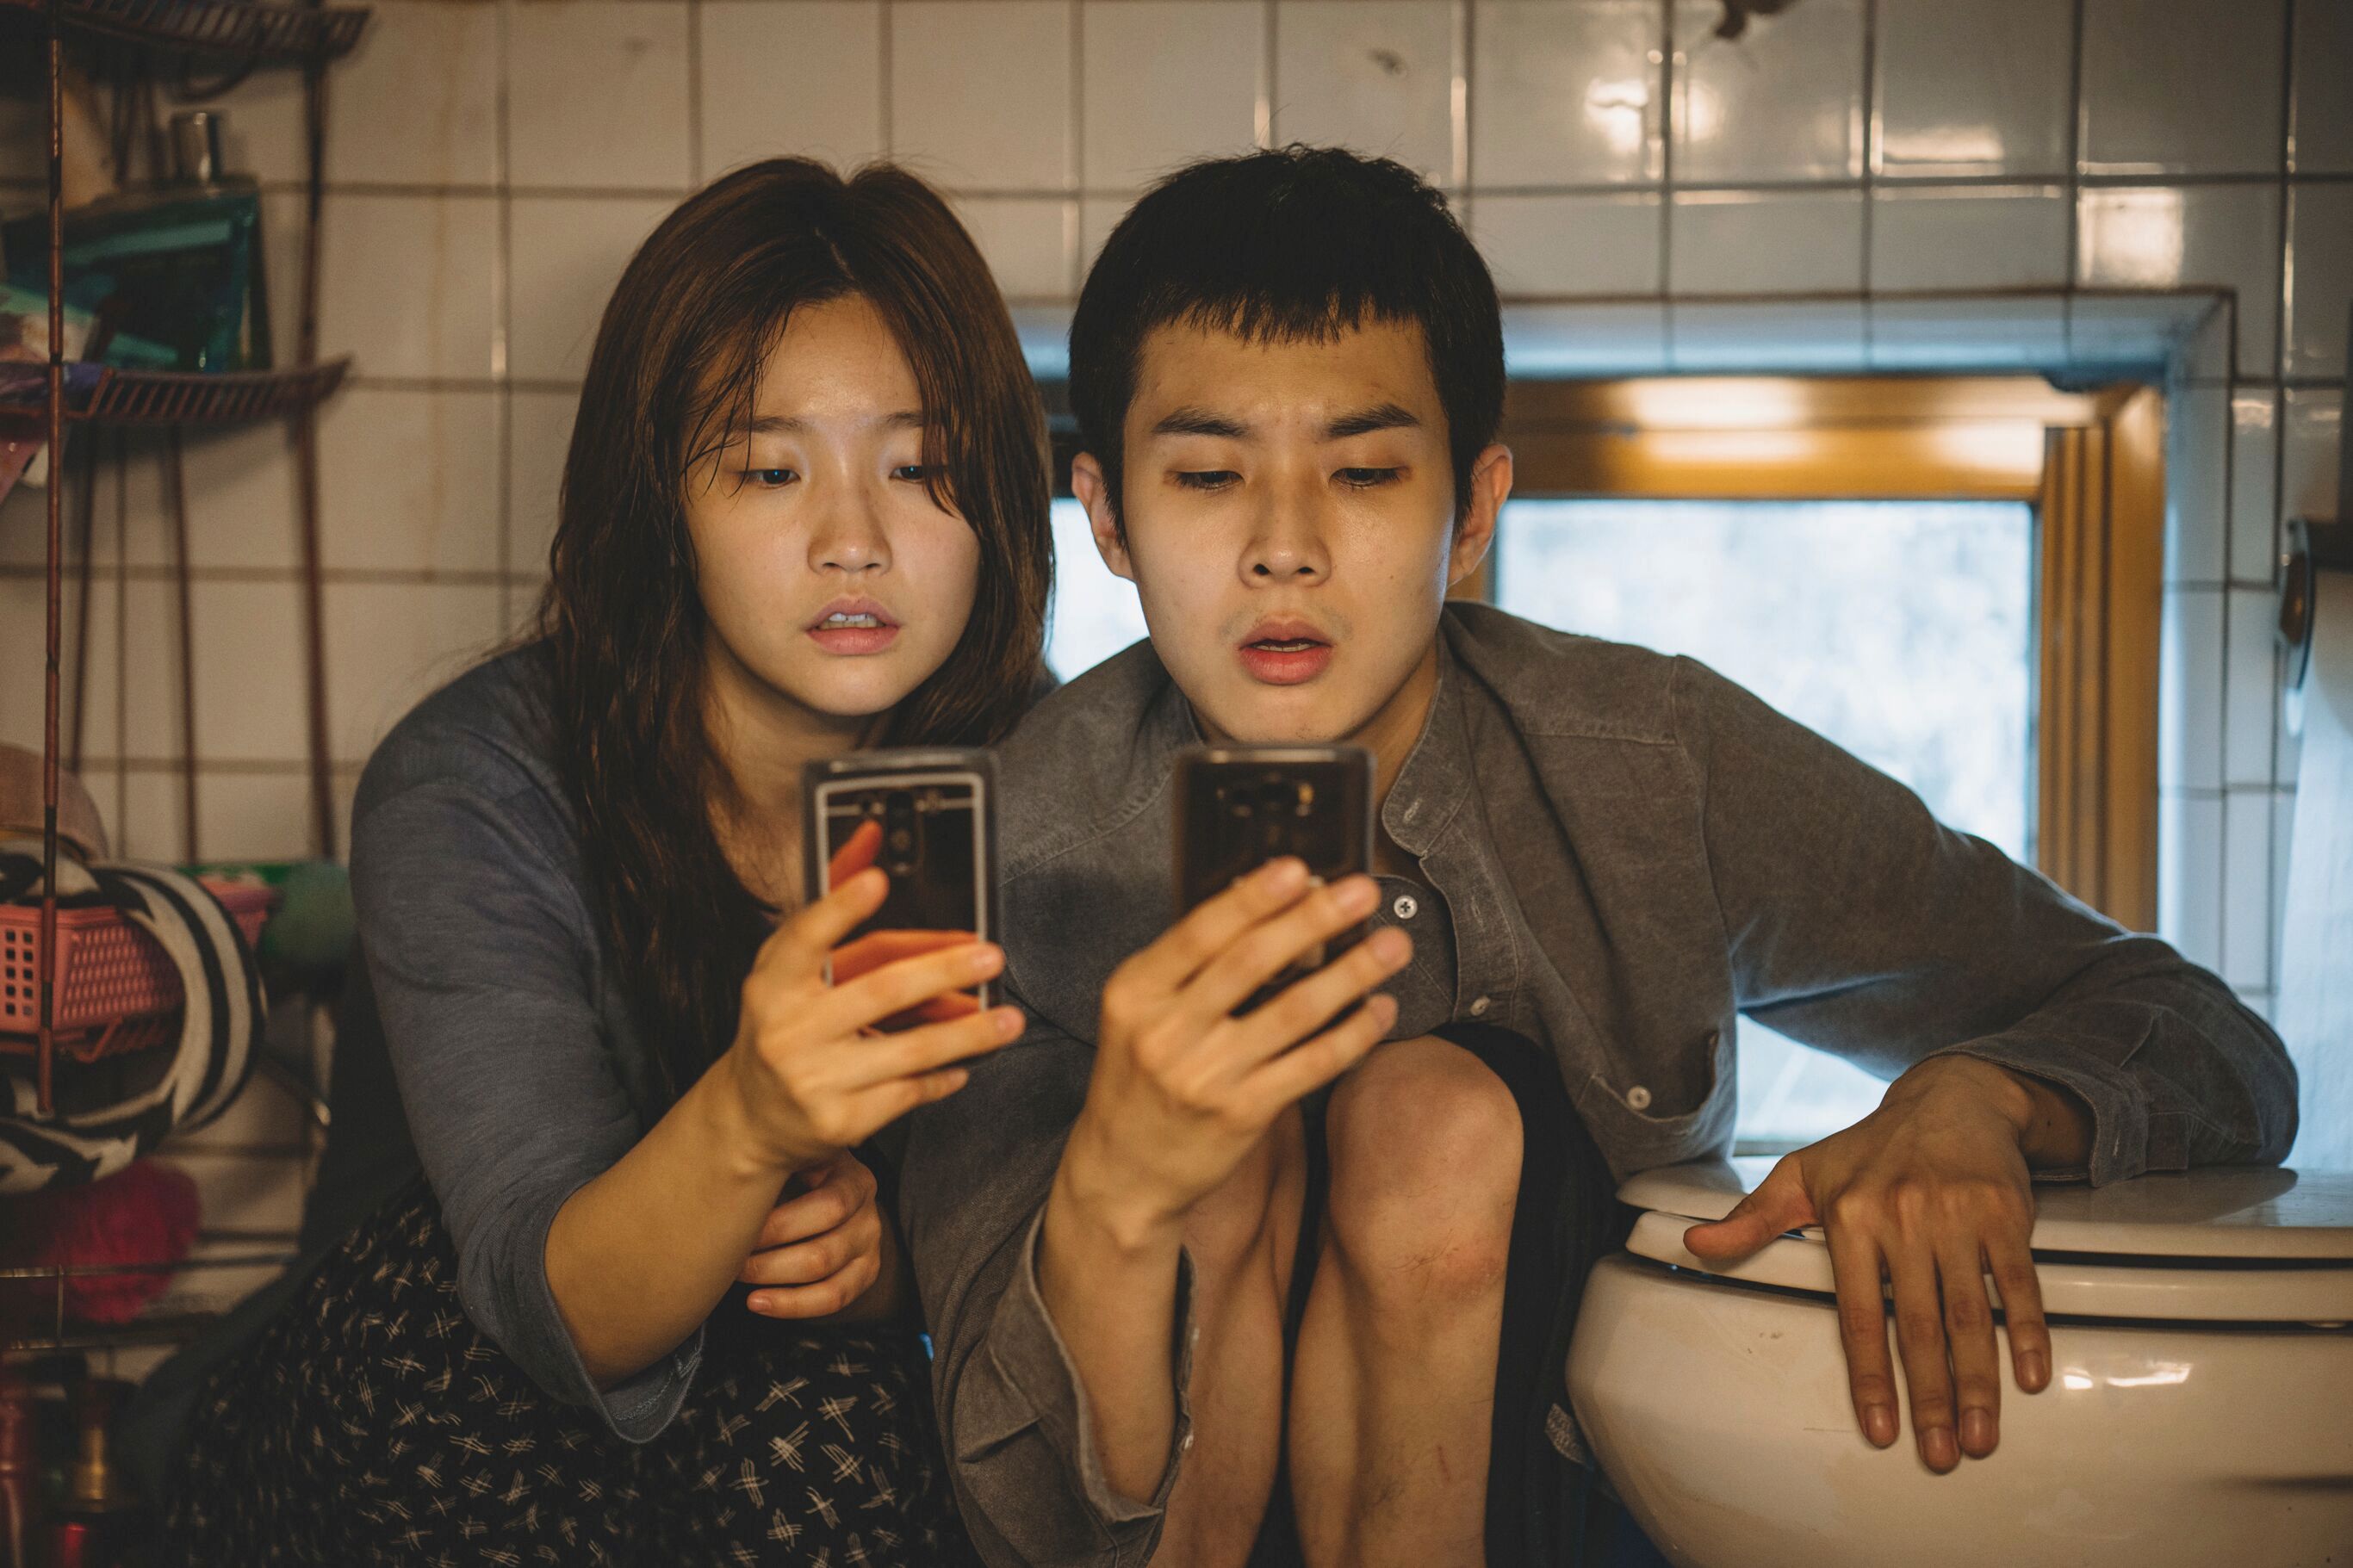 فيلم طفيلي الأغنياء والفقراء في المجتمع الكوري نون بوست